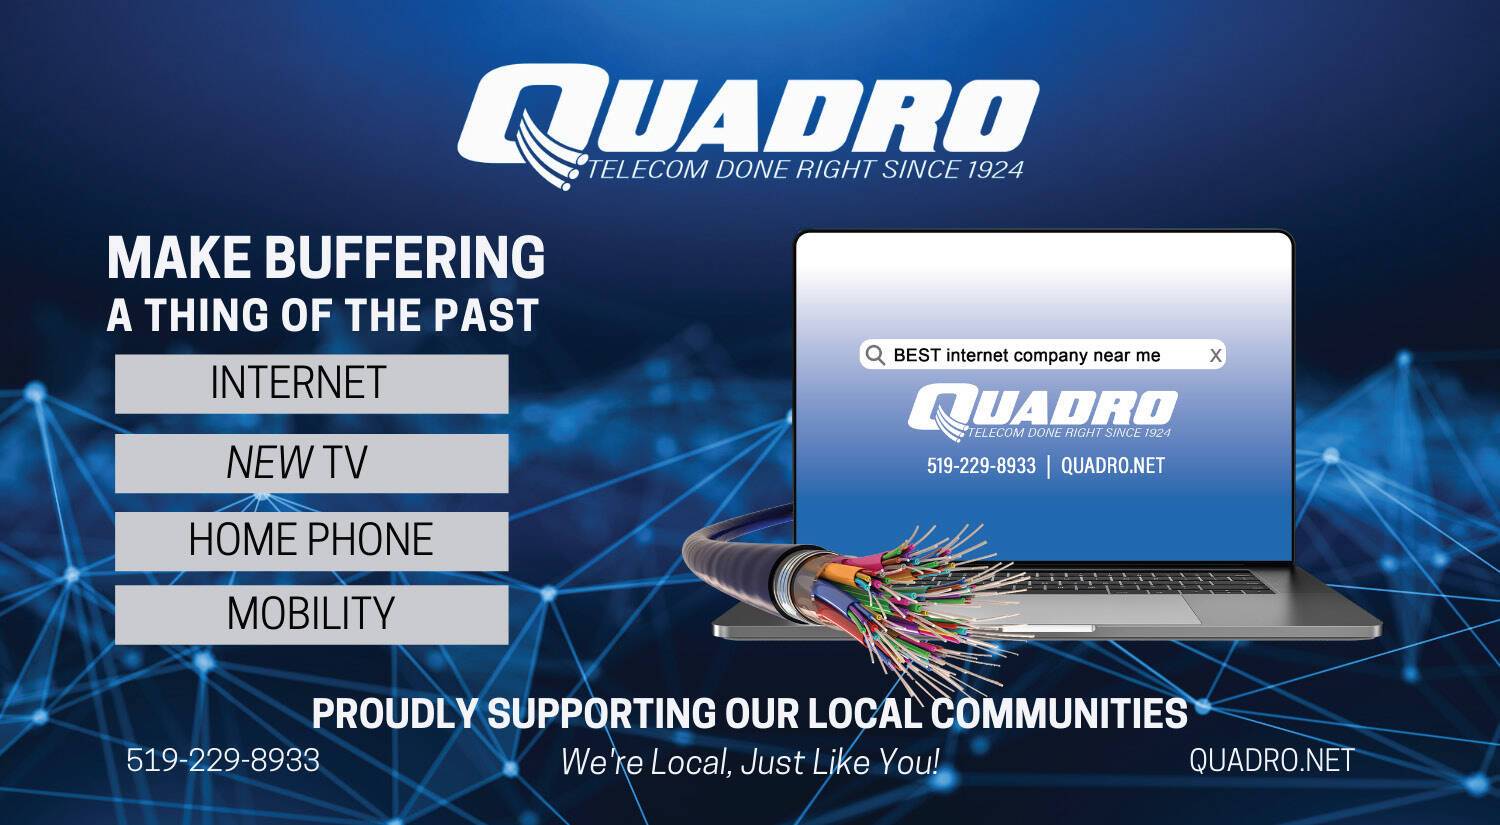 Quadro Communications